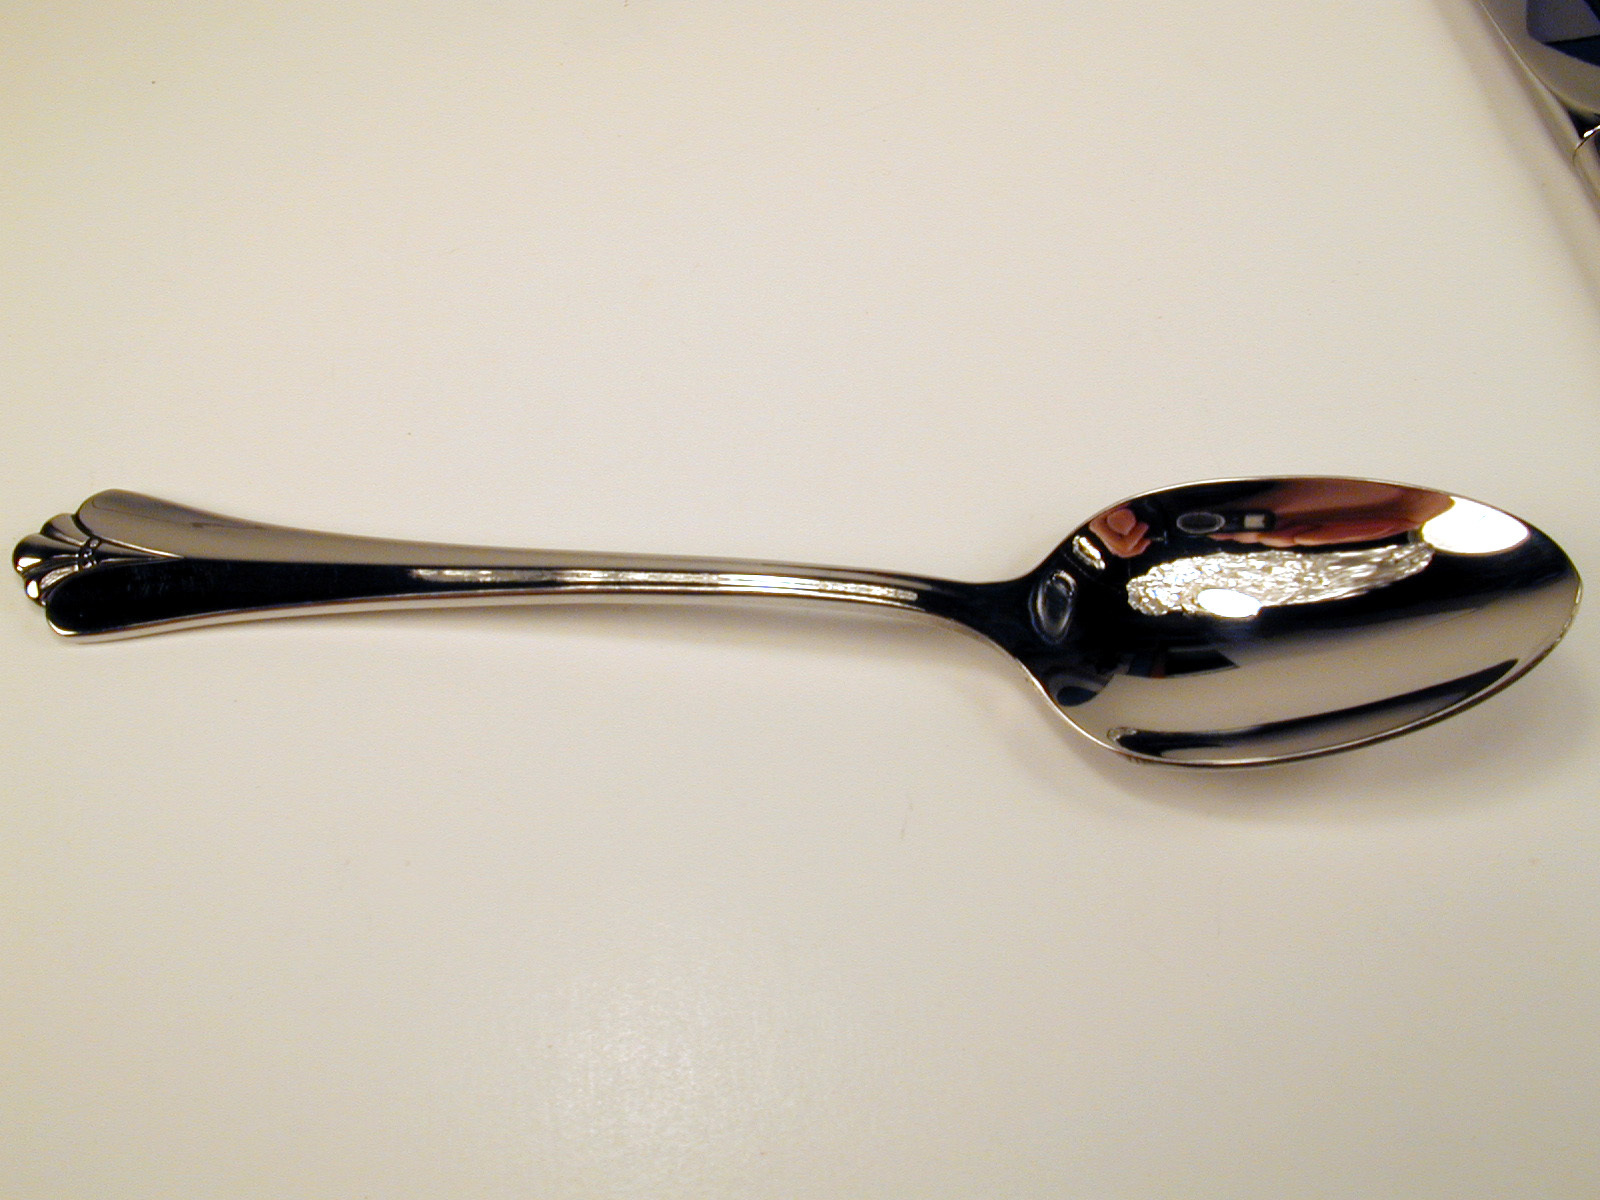 spoon spoon